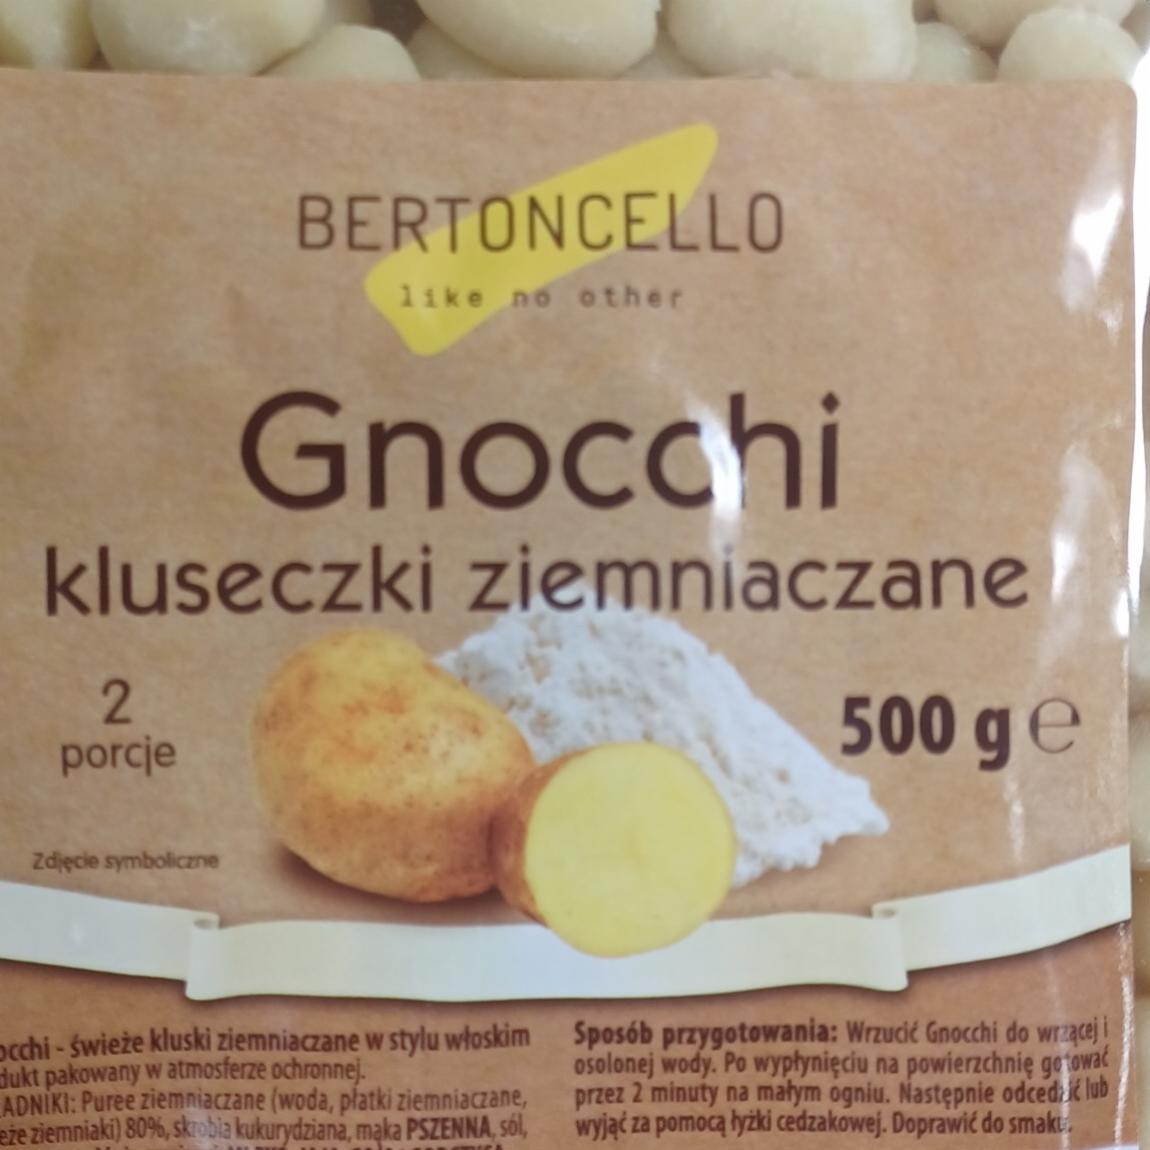 Zdjęcia - Gnocchi kluseczki ziemniaczane Bertoncello